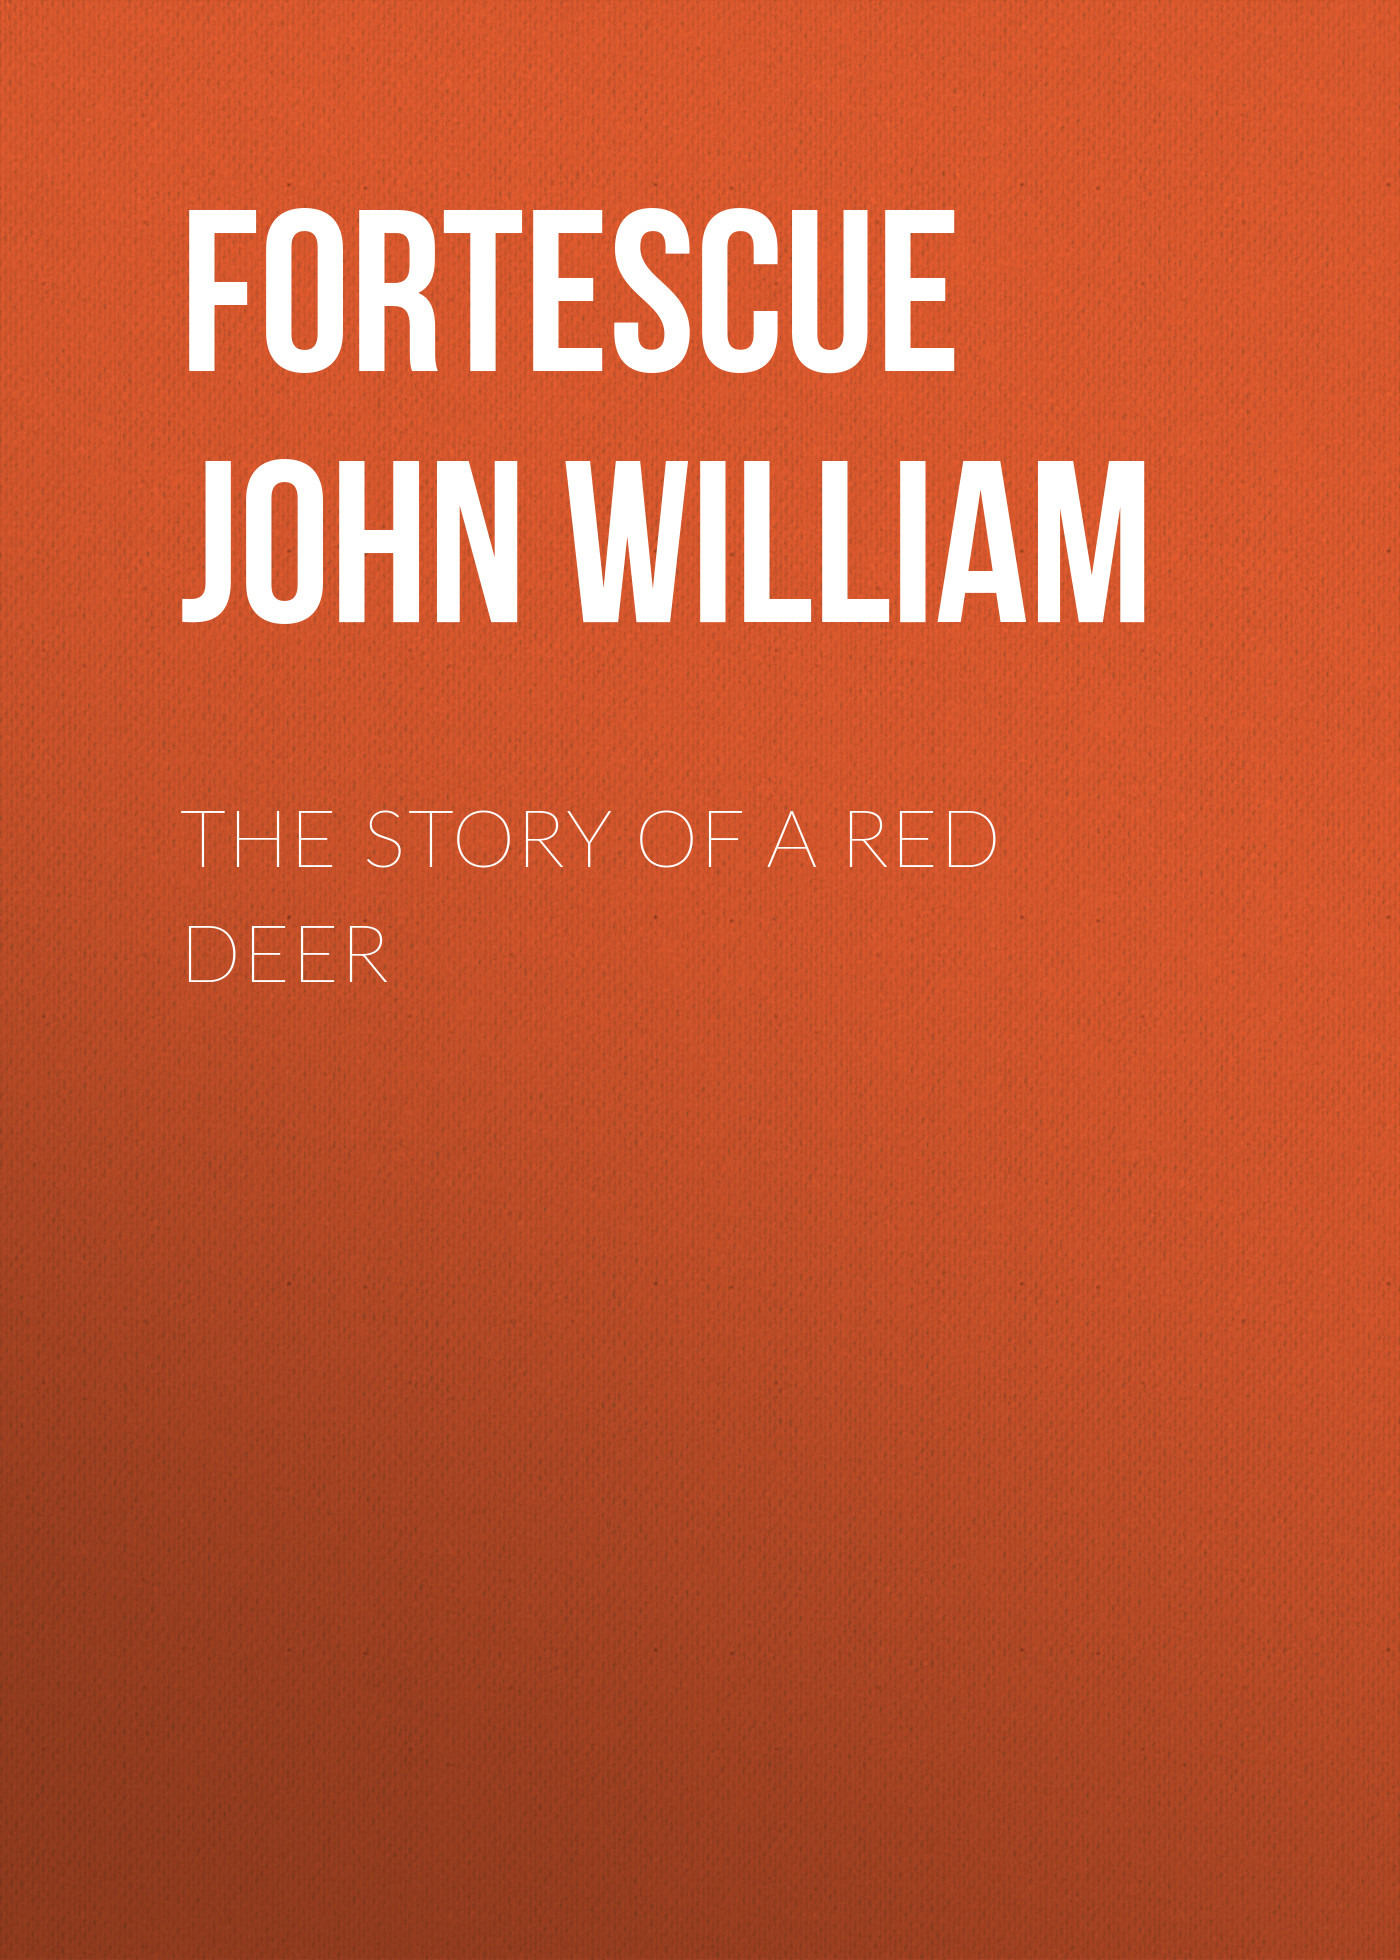 Книга The Story of a Red Deer из серии , созданная John Fortescue, может относится к жанру Природа и животные, Зарубежная старинная литература, Зарубежная классика, Детская проза. Стоимость книги The Story of a Red Deer  с идентификатором 24726505 составляет 0 руб.